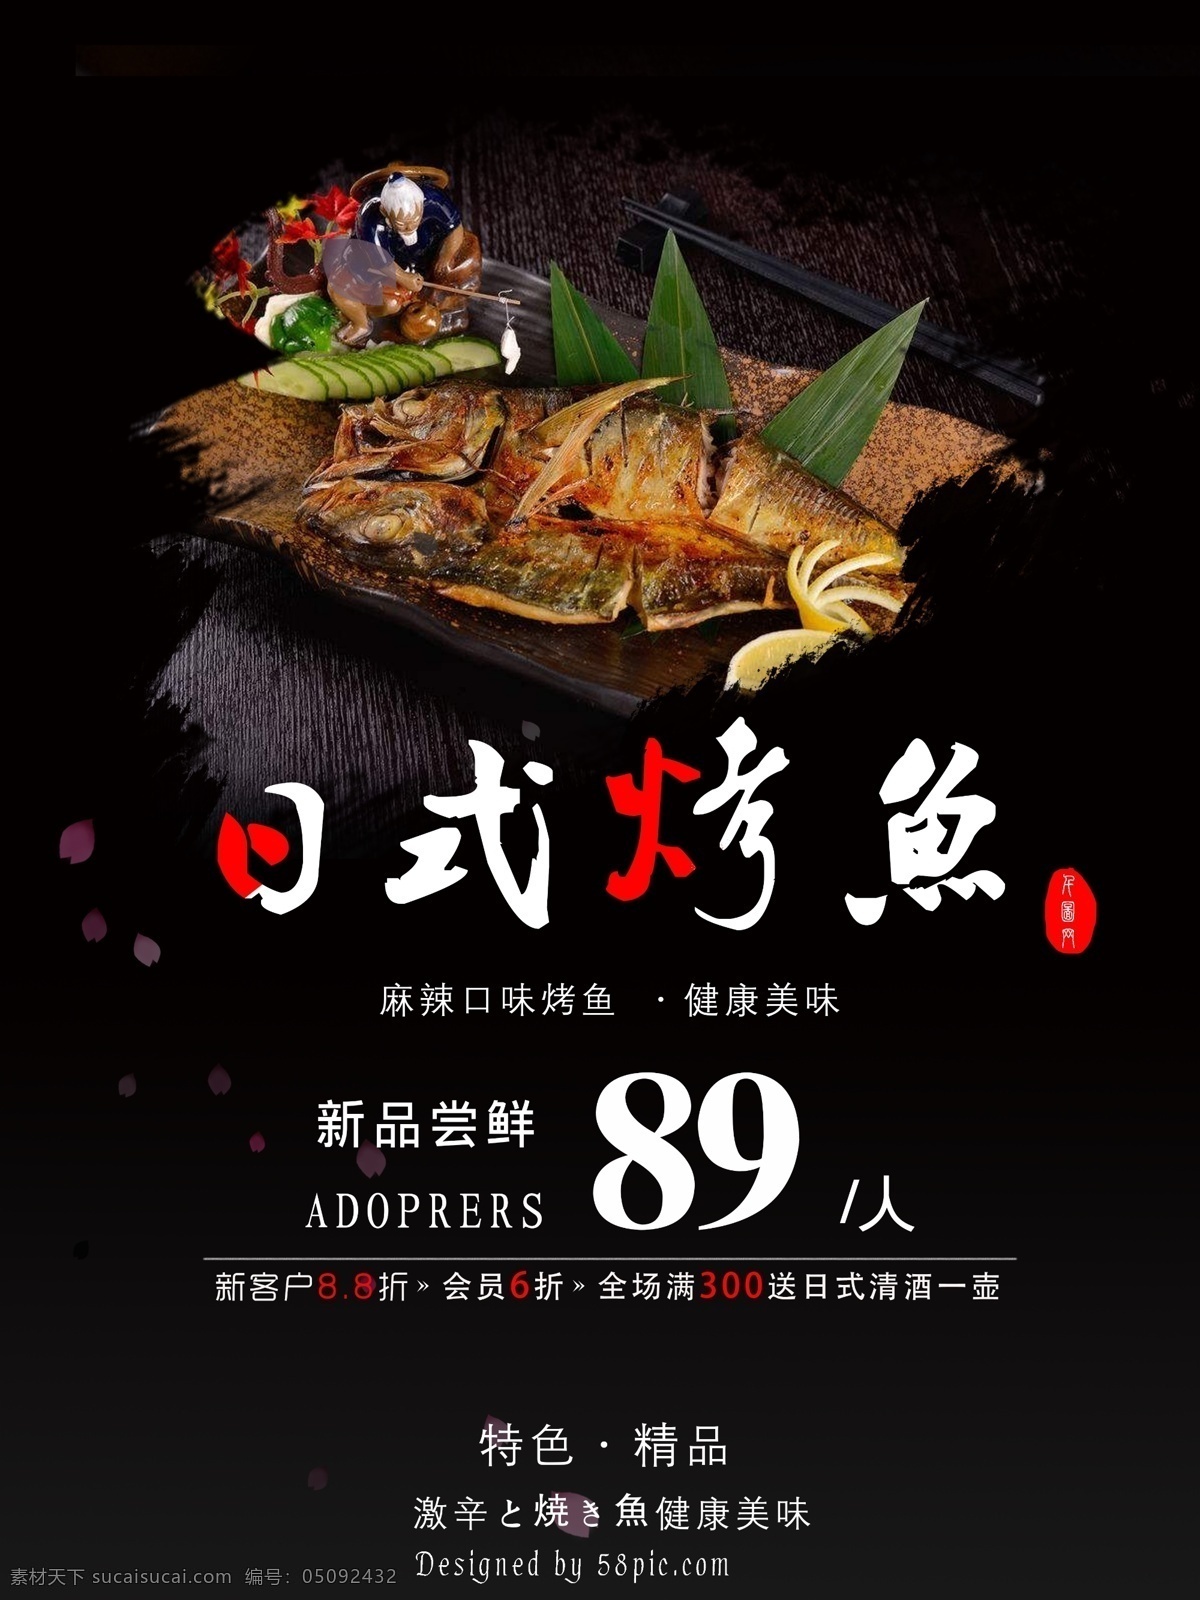 原创 日式 美食 烤鱼 海报 日式美食 日式烤鱼 烤鱼活动 促销海报 餐饮海报设计